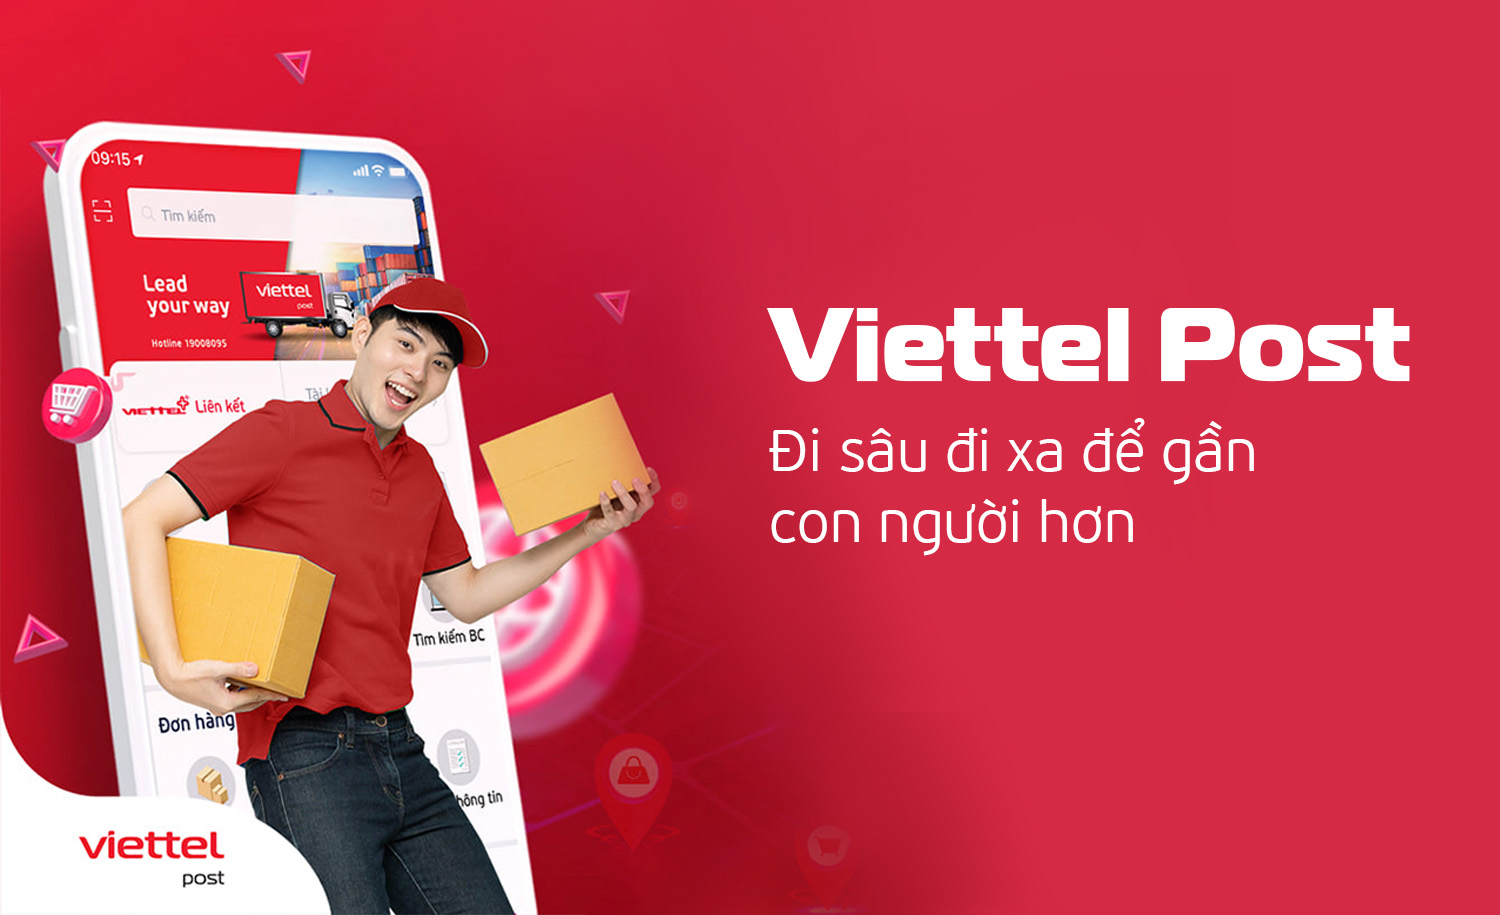 Ứng dụng Viettel Post: Đổi mới sáng tạo không ngừng để tối giản thao tác, tối ưu trải nghiệm cho người tiêu dùng Việt - Ảnh 3.